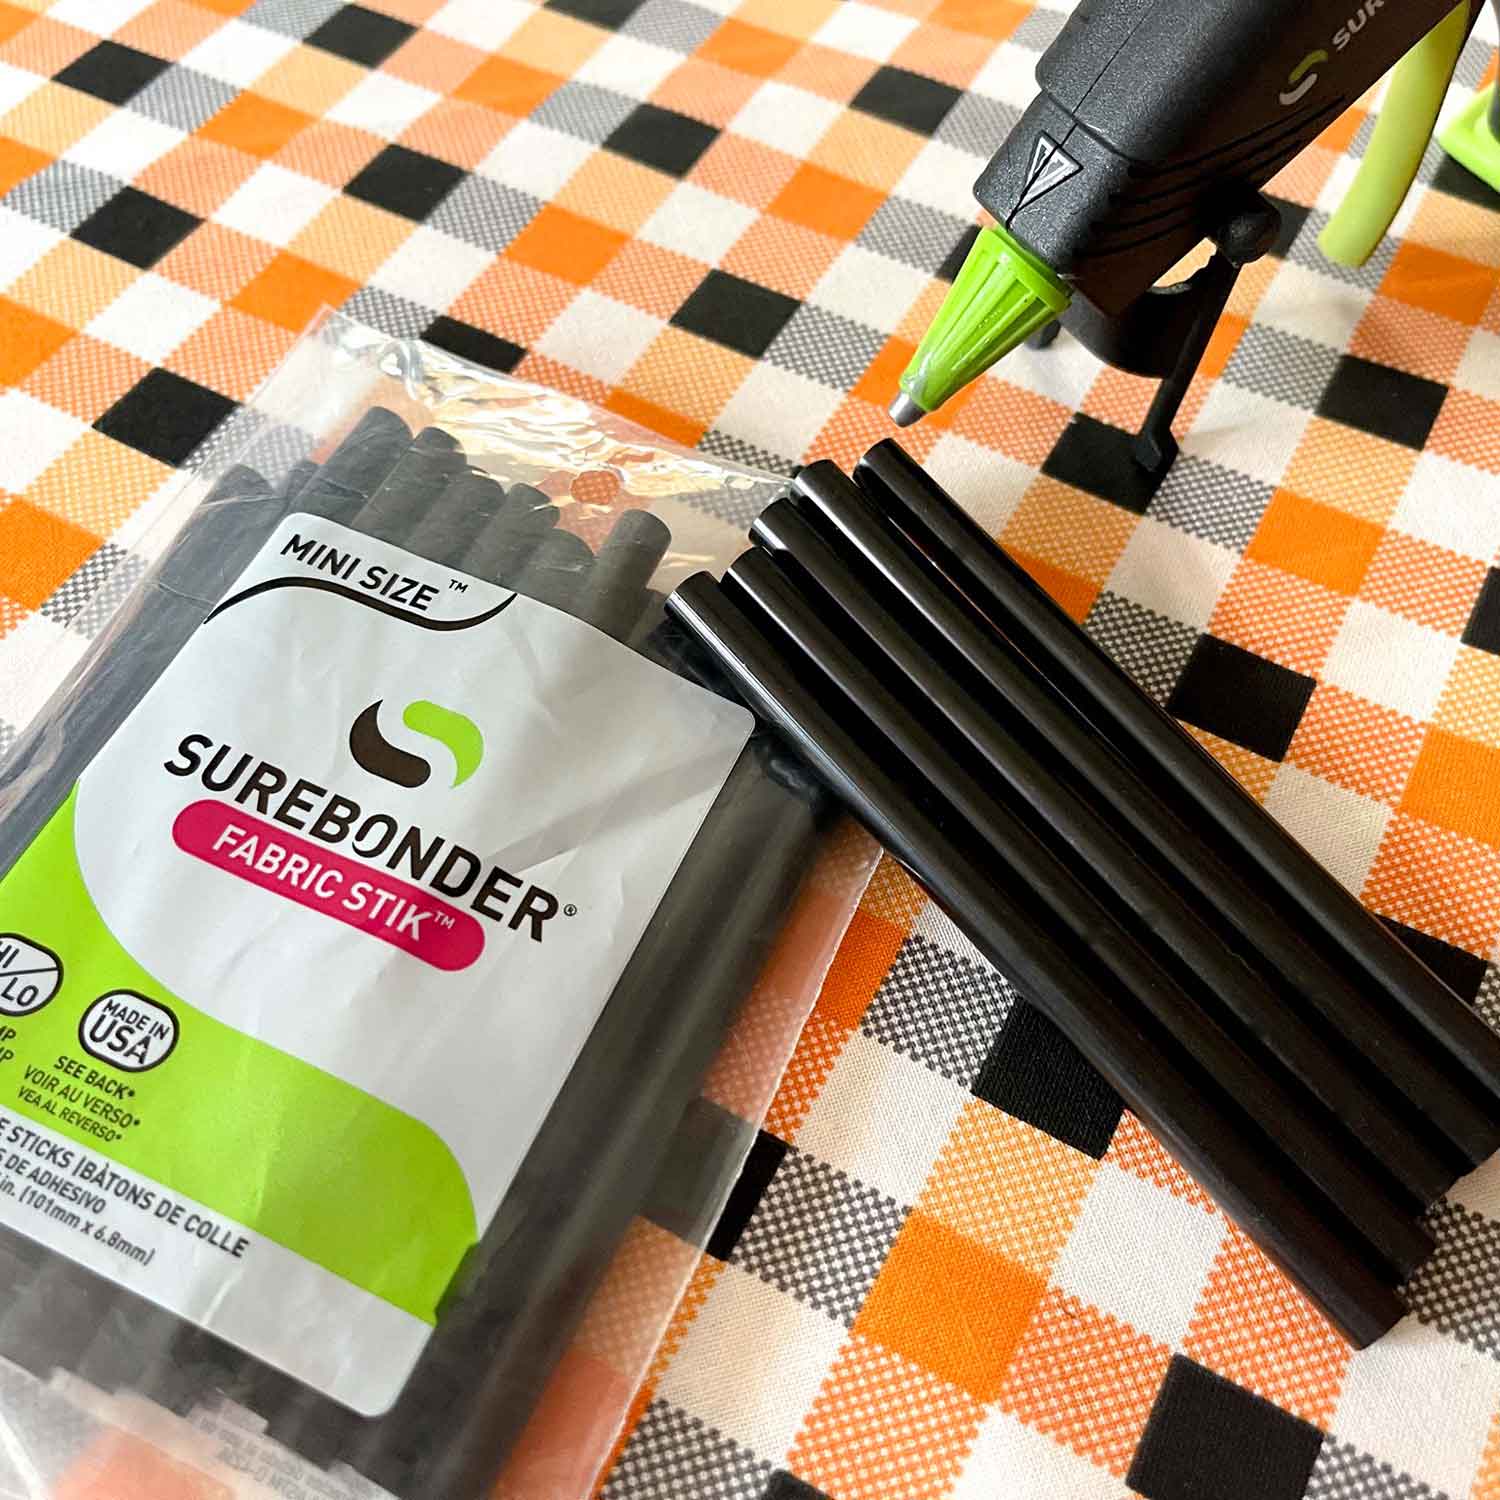 Surebonder Black Fabric Hot Glue Stick Mini Size 4 - 18 Pack